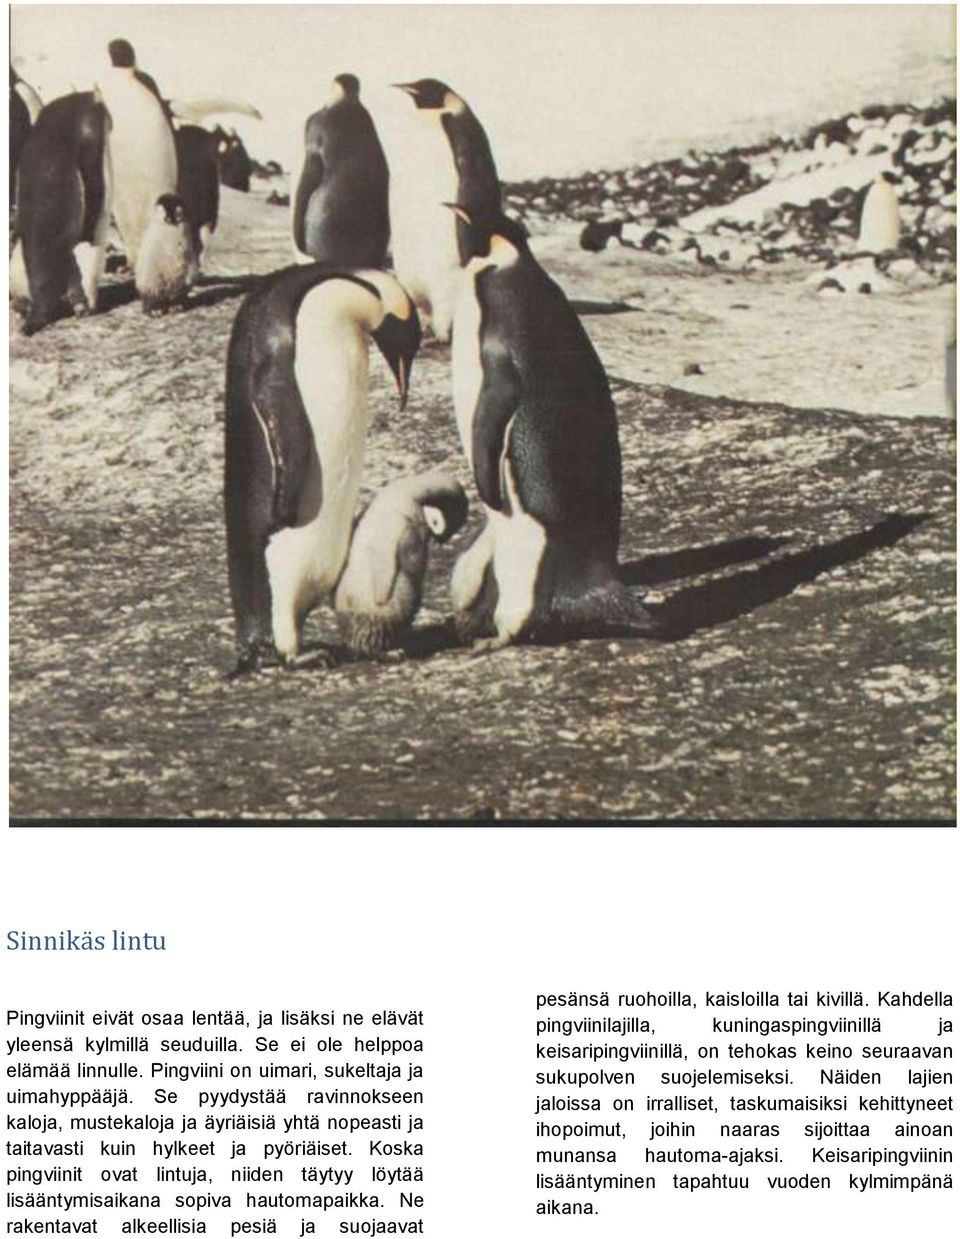 Koska pingviinit ovat lintuja, niiden täytyy löytää lisääntymisaikana sopiva hautomapaikka. Ne rakentavat alkeellisia pesiä ja suojaavat pesänsä ruohoilla, kaisloilla tai kivillä.